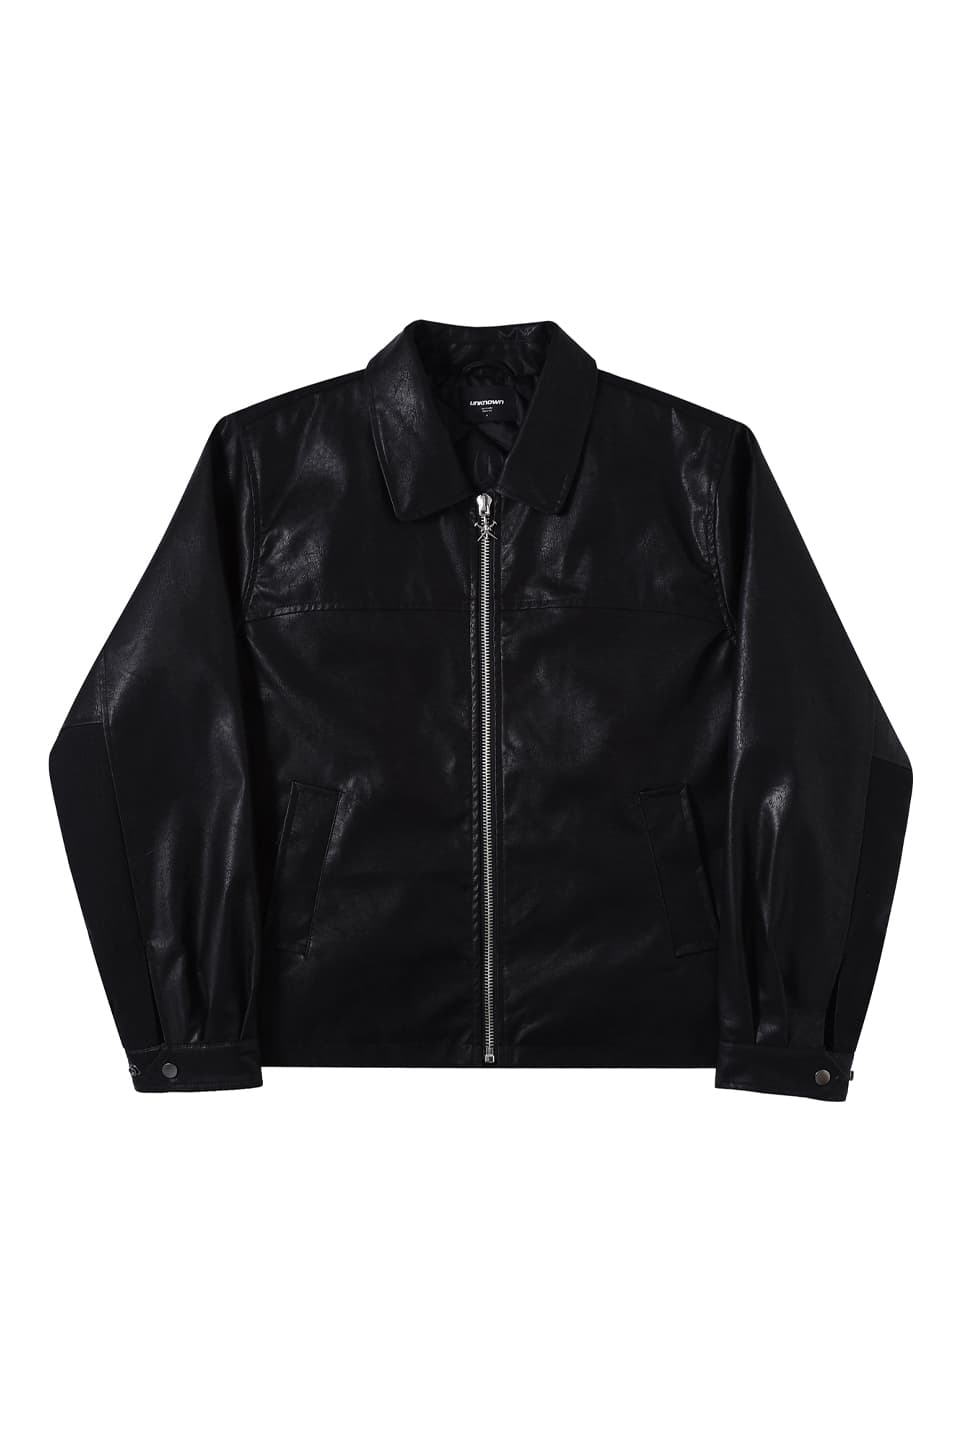 Jewel Skeleton Leather Jacket